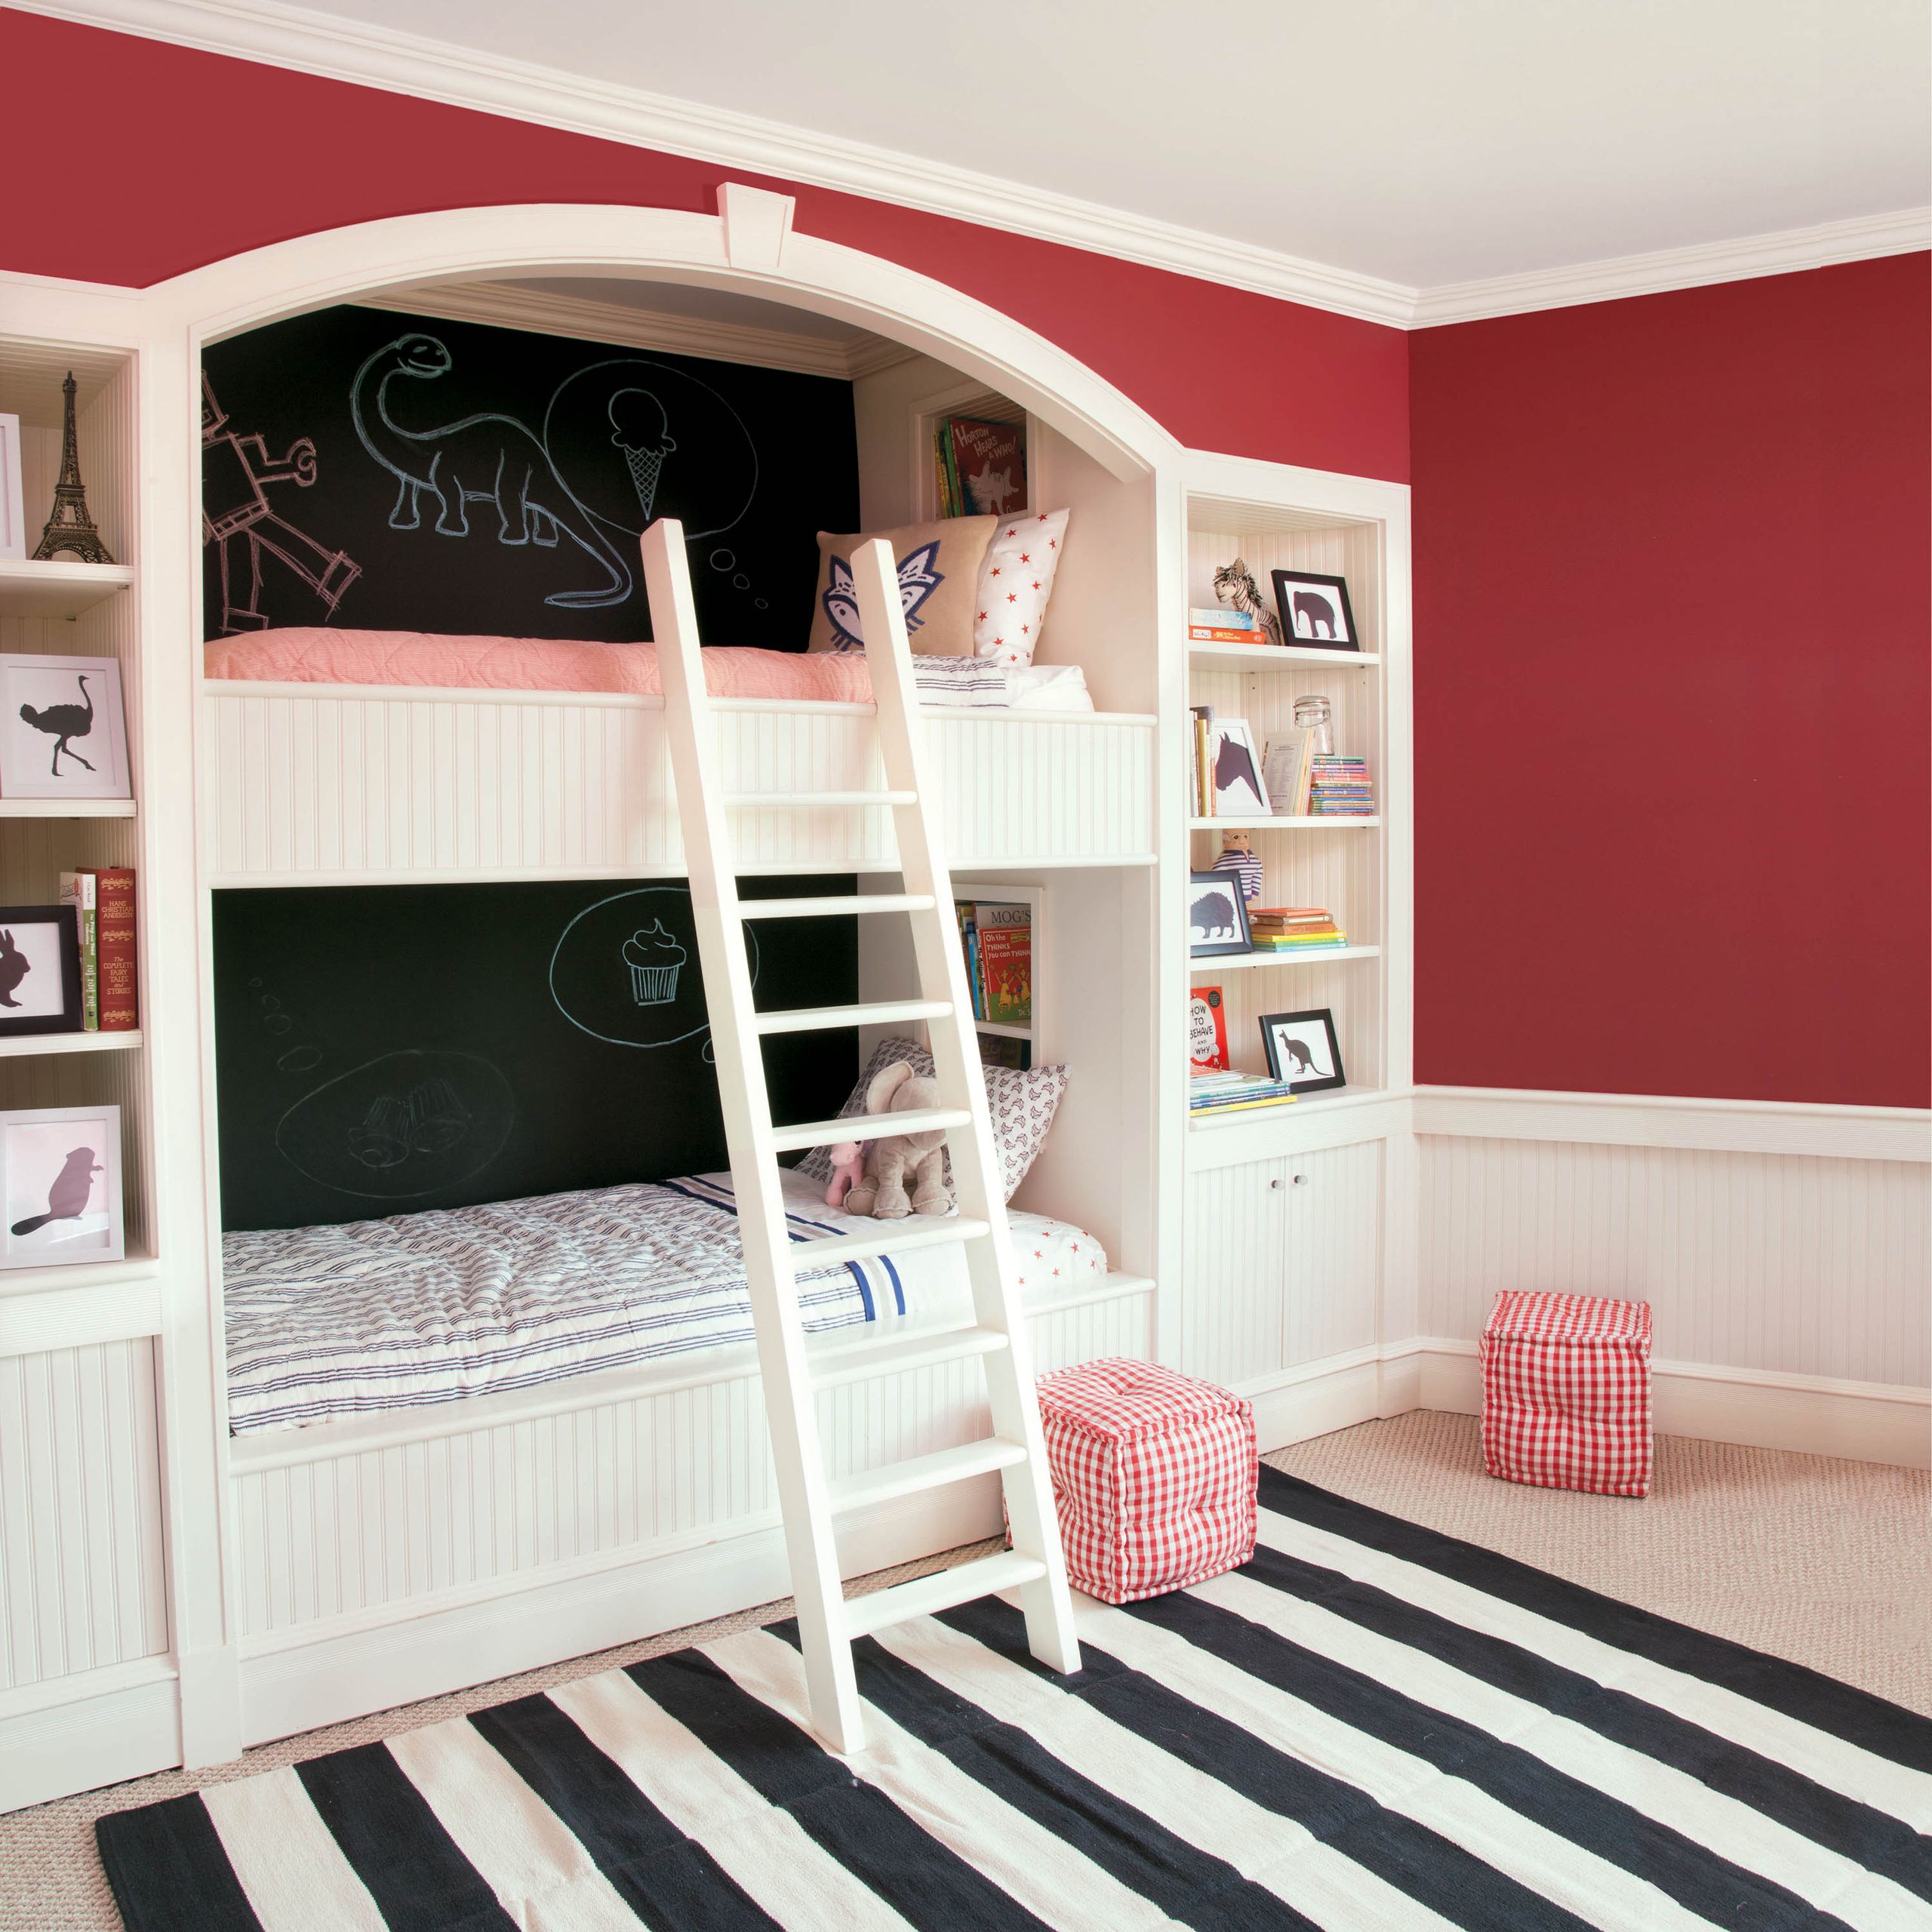 Camas para crianças com parede de tinta de lousa e paredes principais vermelhas's bunk beds with blackboard paint wall and red main walls